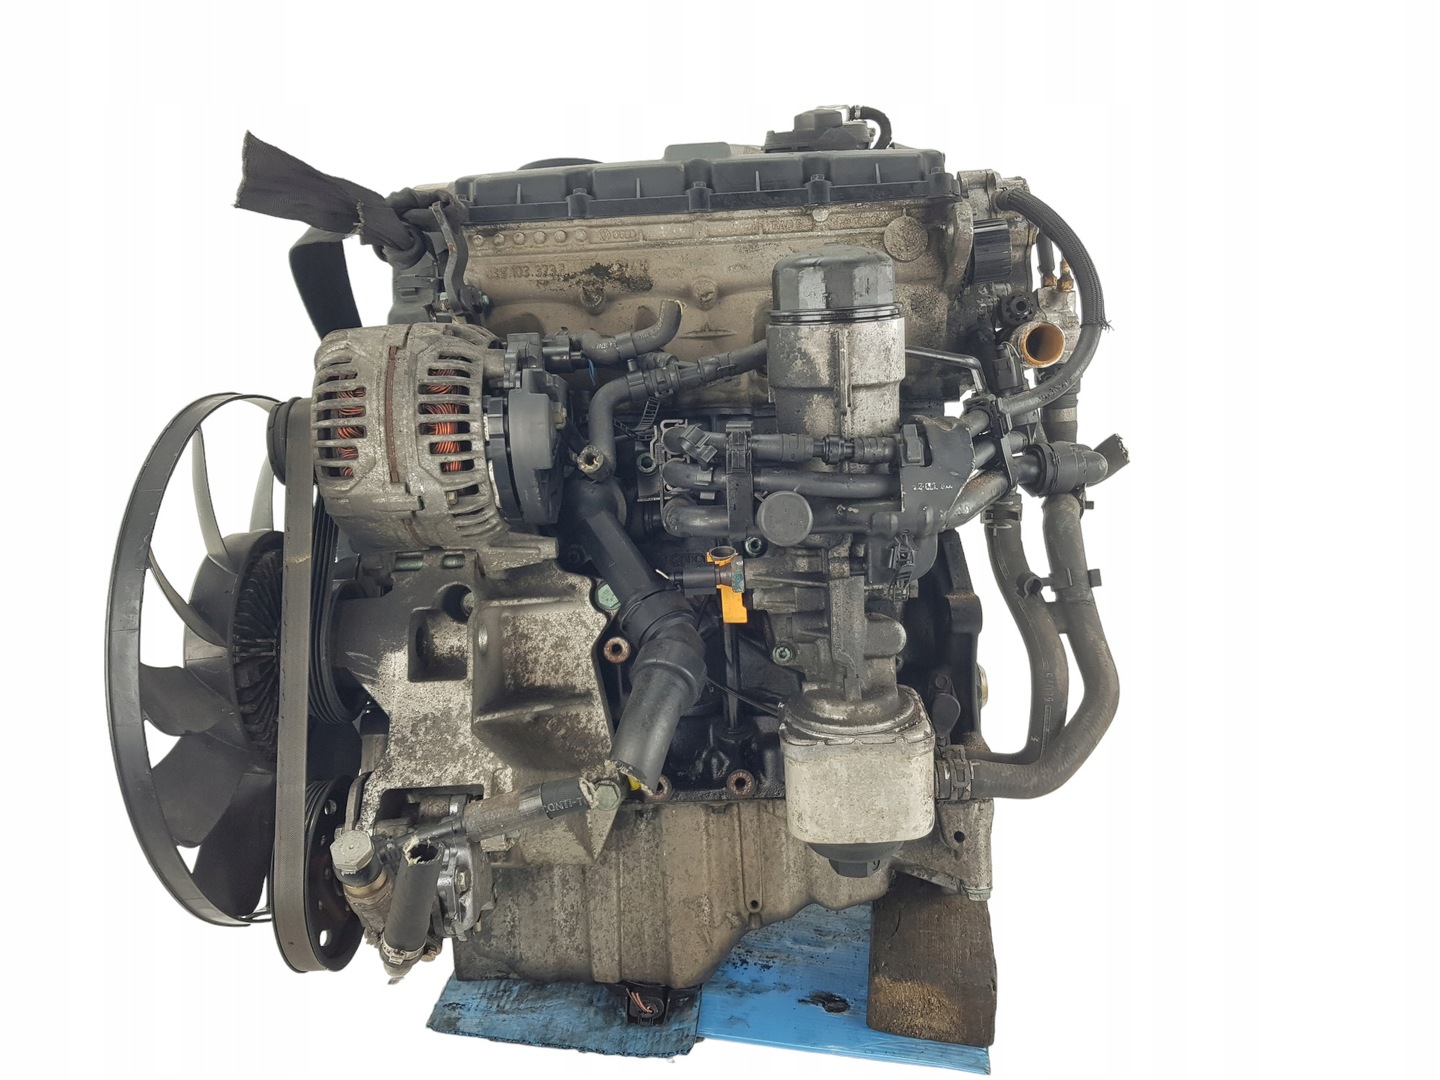 Масло в двигатель 1.9 TDI AJM: Audi A4 B5; A6 C5 - рекомендации и объем